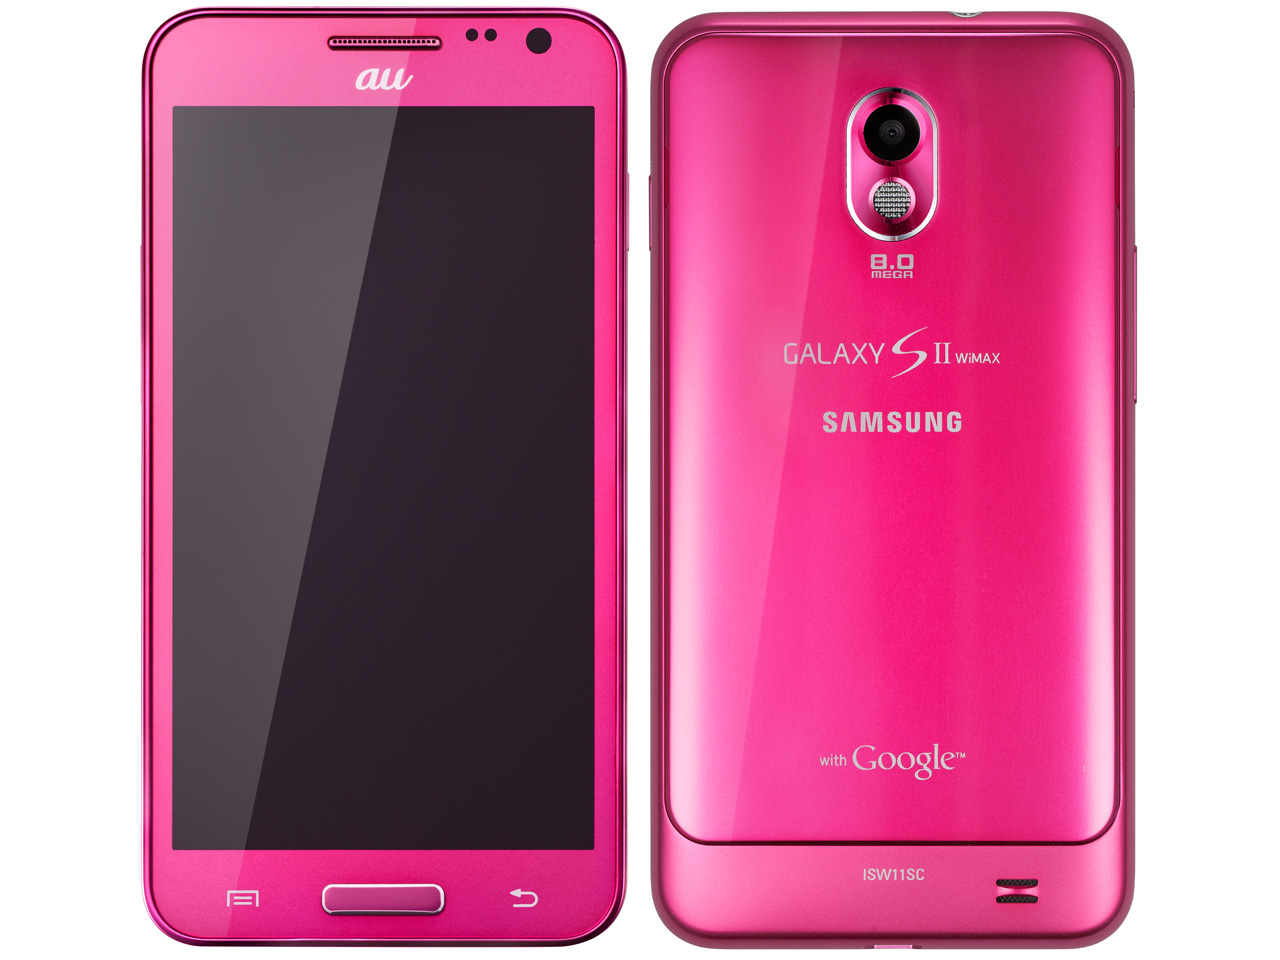 どピンクなギャラクシー Galaxy Sii Wimax Isw11sc シャイニーマゼンタ は7月21日発売 ゼロから始めるスマートフォン